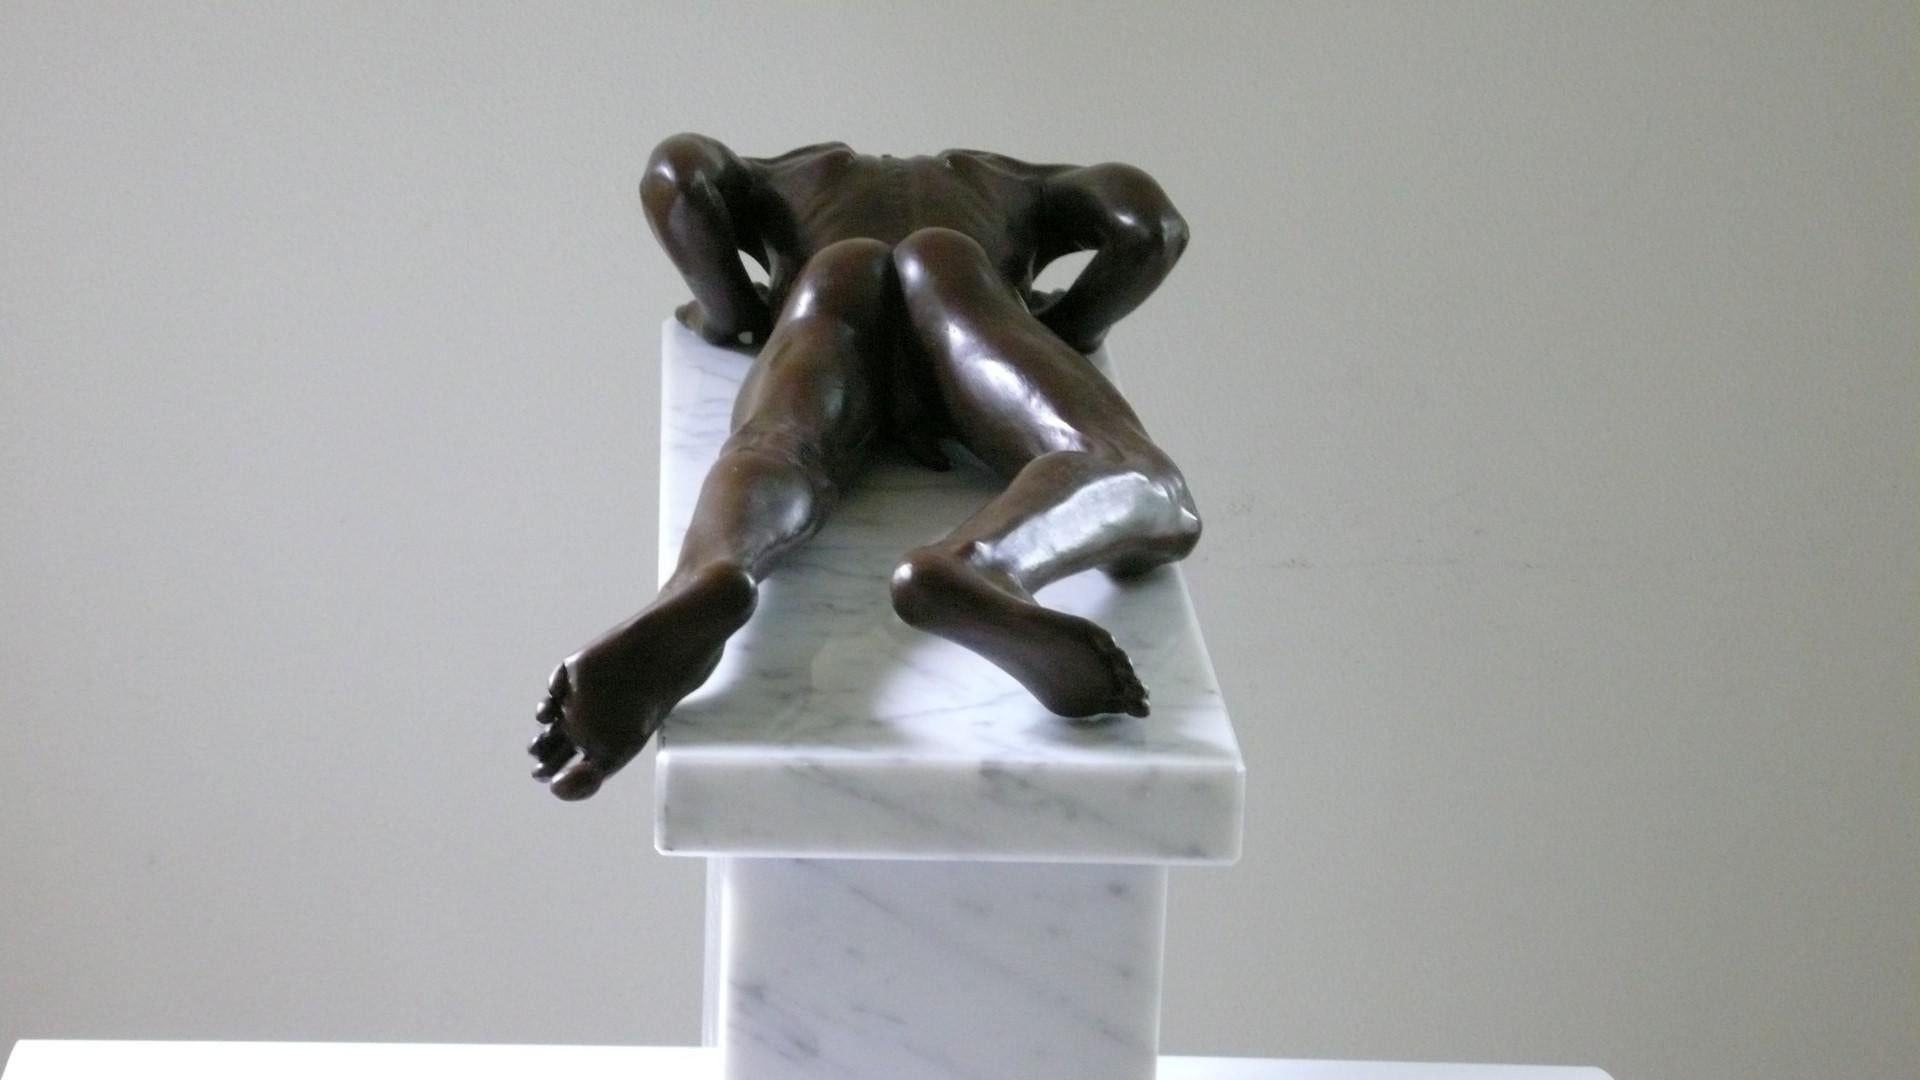 Profundus Sculpture en bronze Garçon nu Figure masculine contemporaine Marbre Pierre

Wim van der Kant (1949, Kampen) est un artiste autodidacte. À côté de sa profession très prenante d'enseignant dans une école secondaire, il pratique intensément